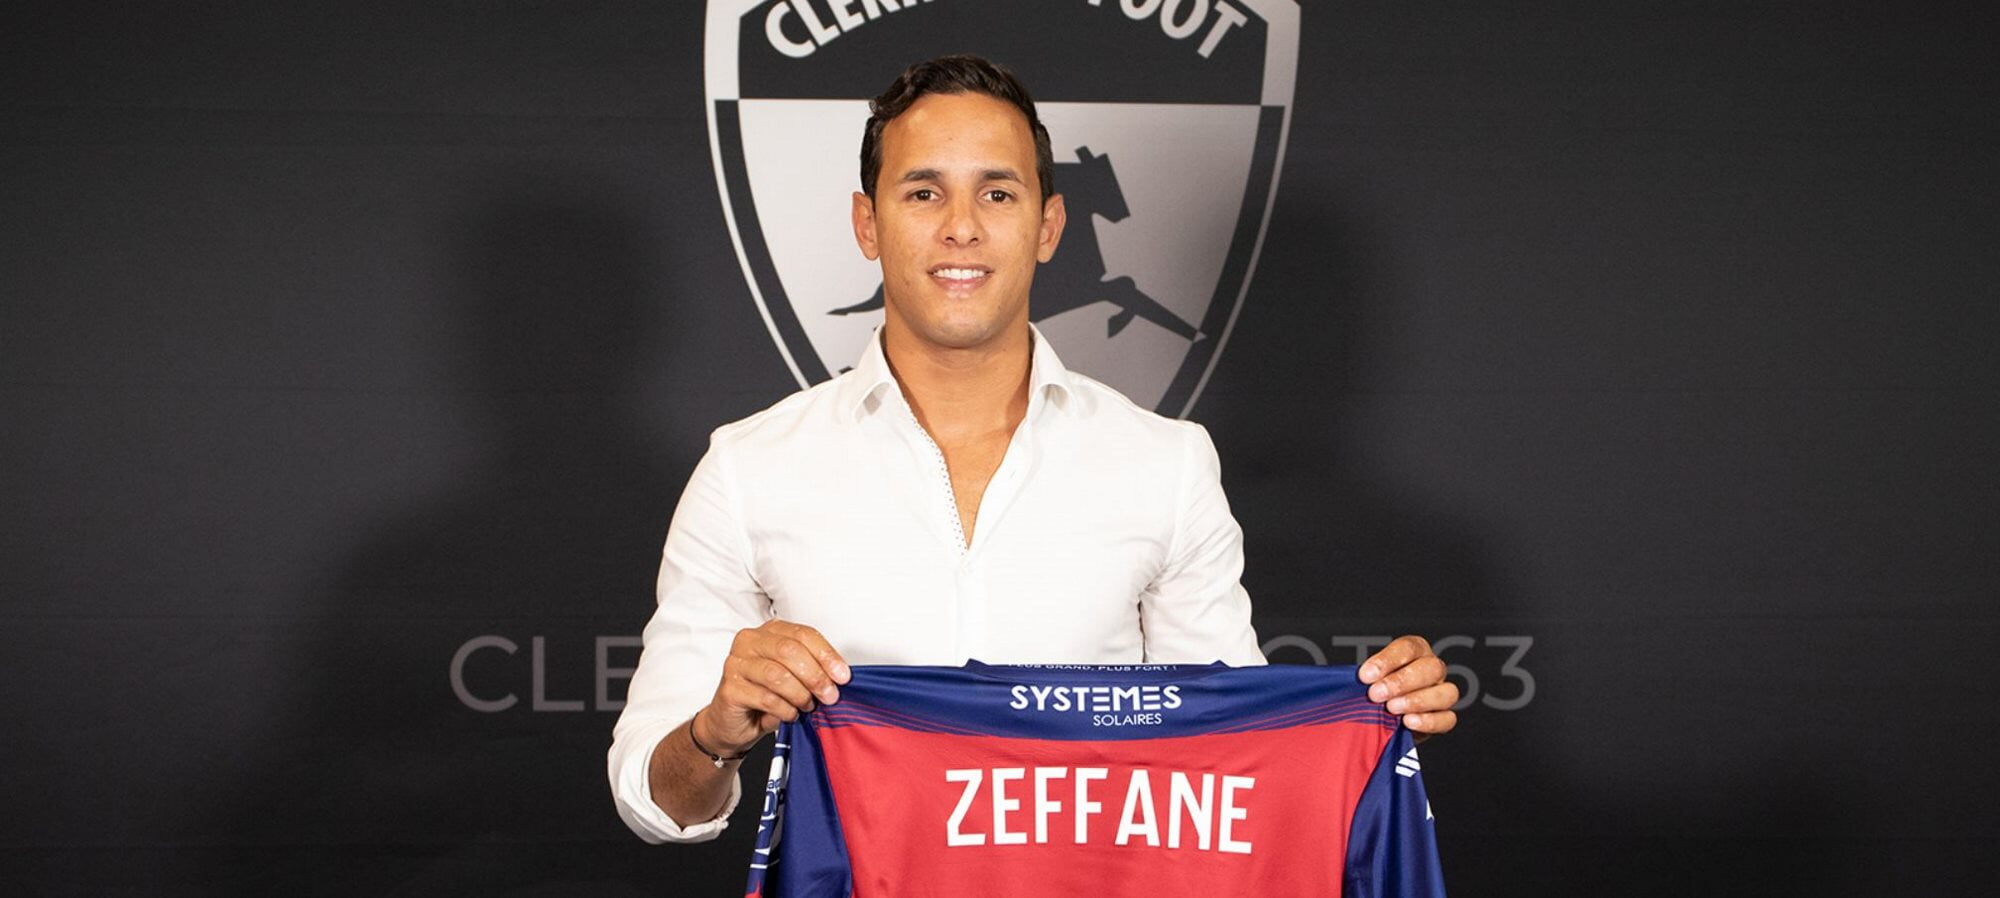 Mehdi Zeffane (Clermont Foot 63).